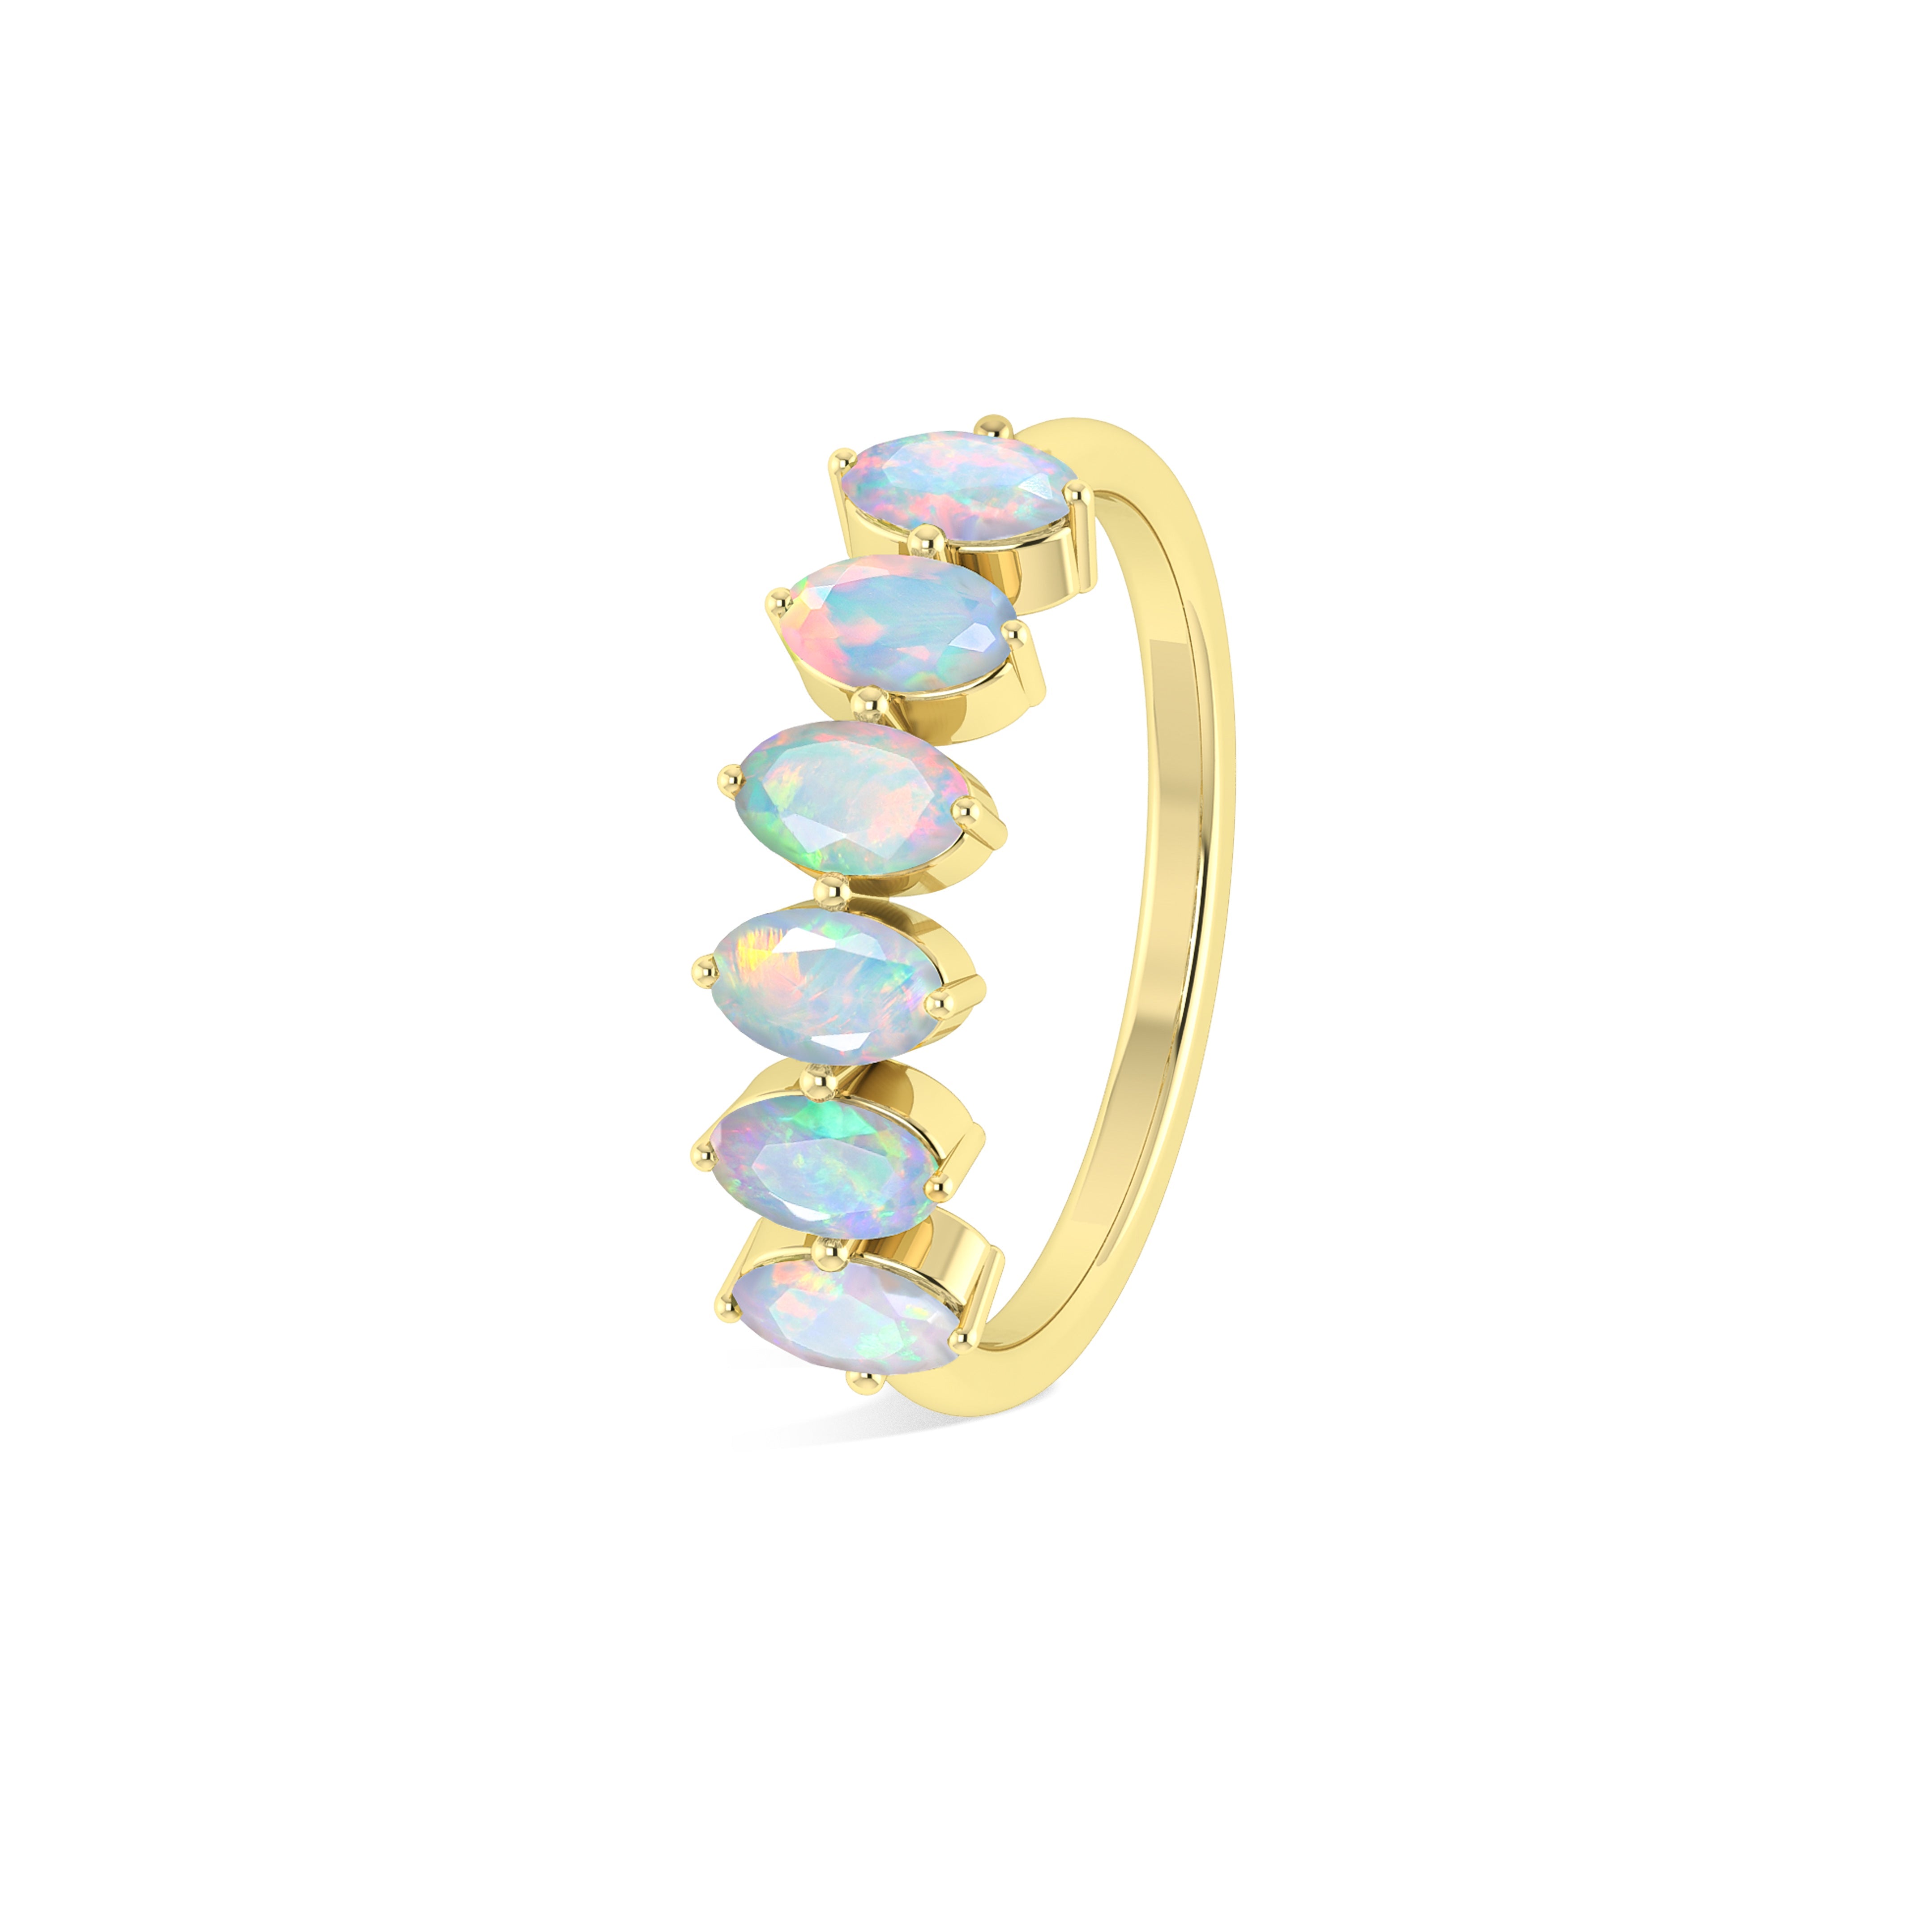 Opal Ring for Men